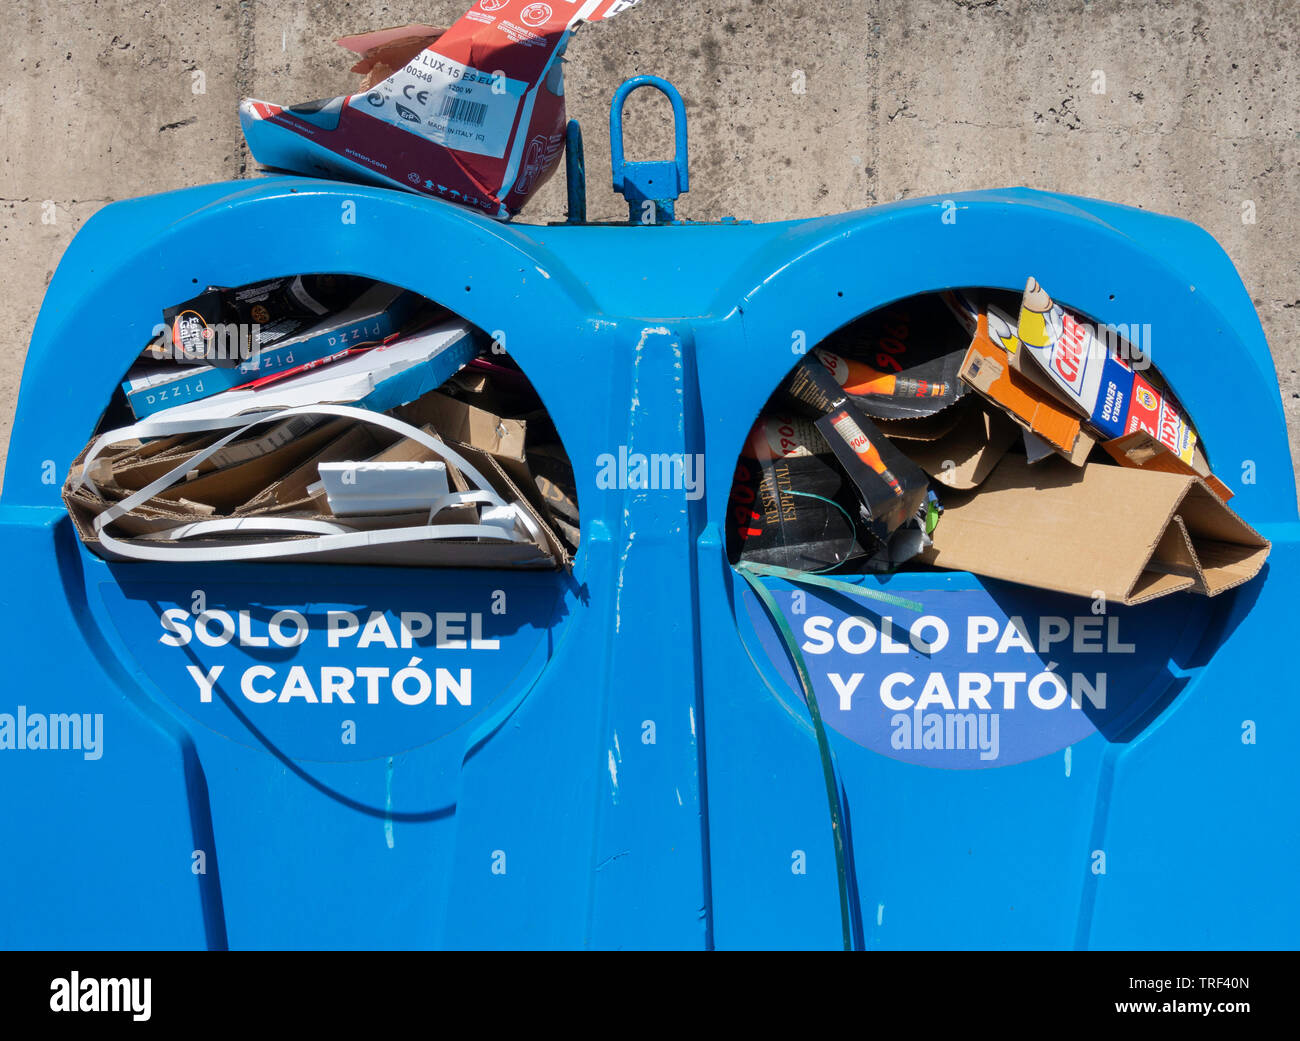 Solo papel y carton (solo carta e cartone) Contenitore di riciclaggio per uso pubblico in strada in Spagna. Foto Stock